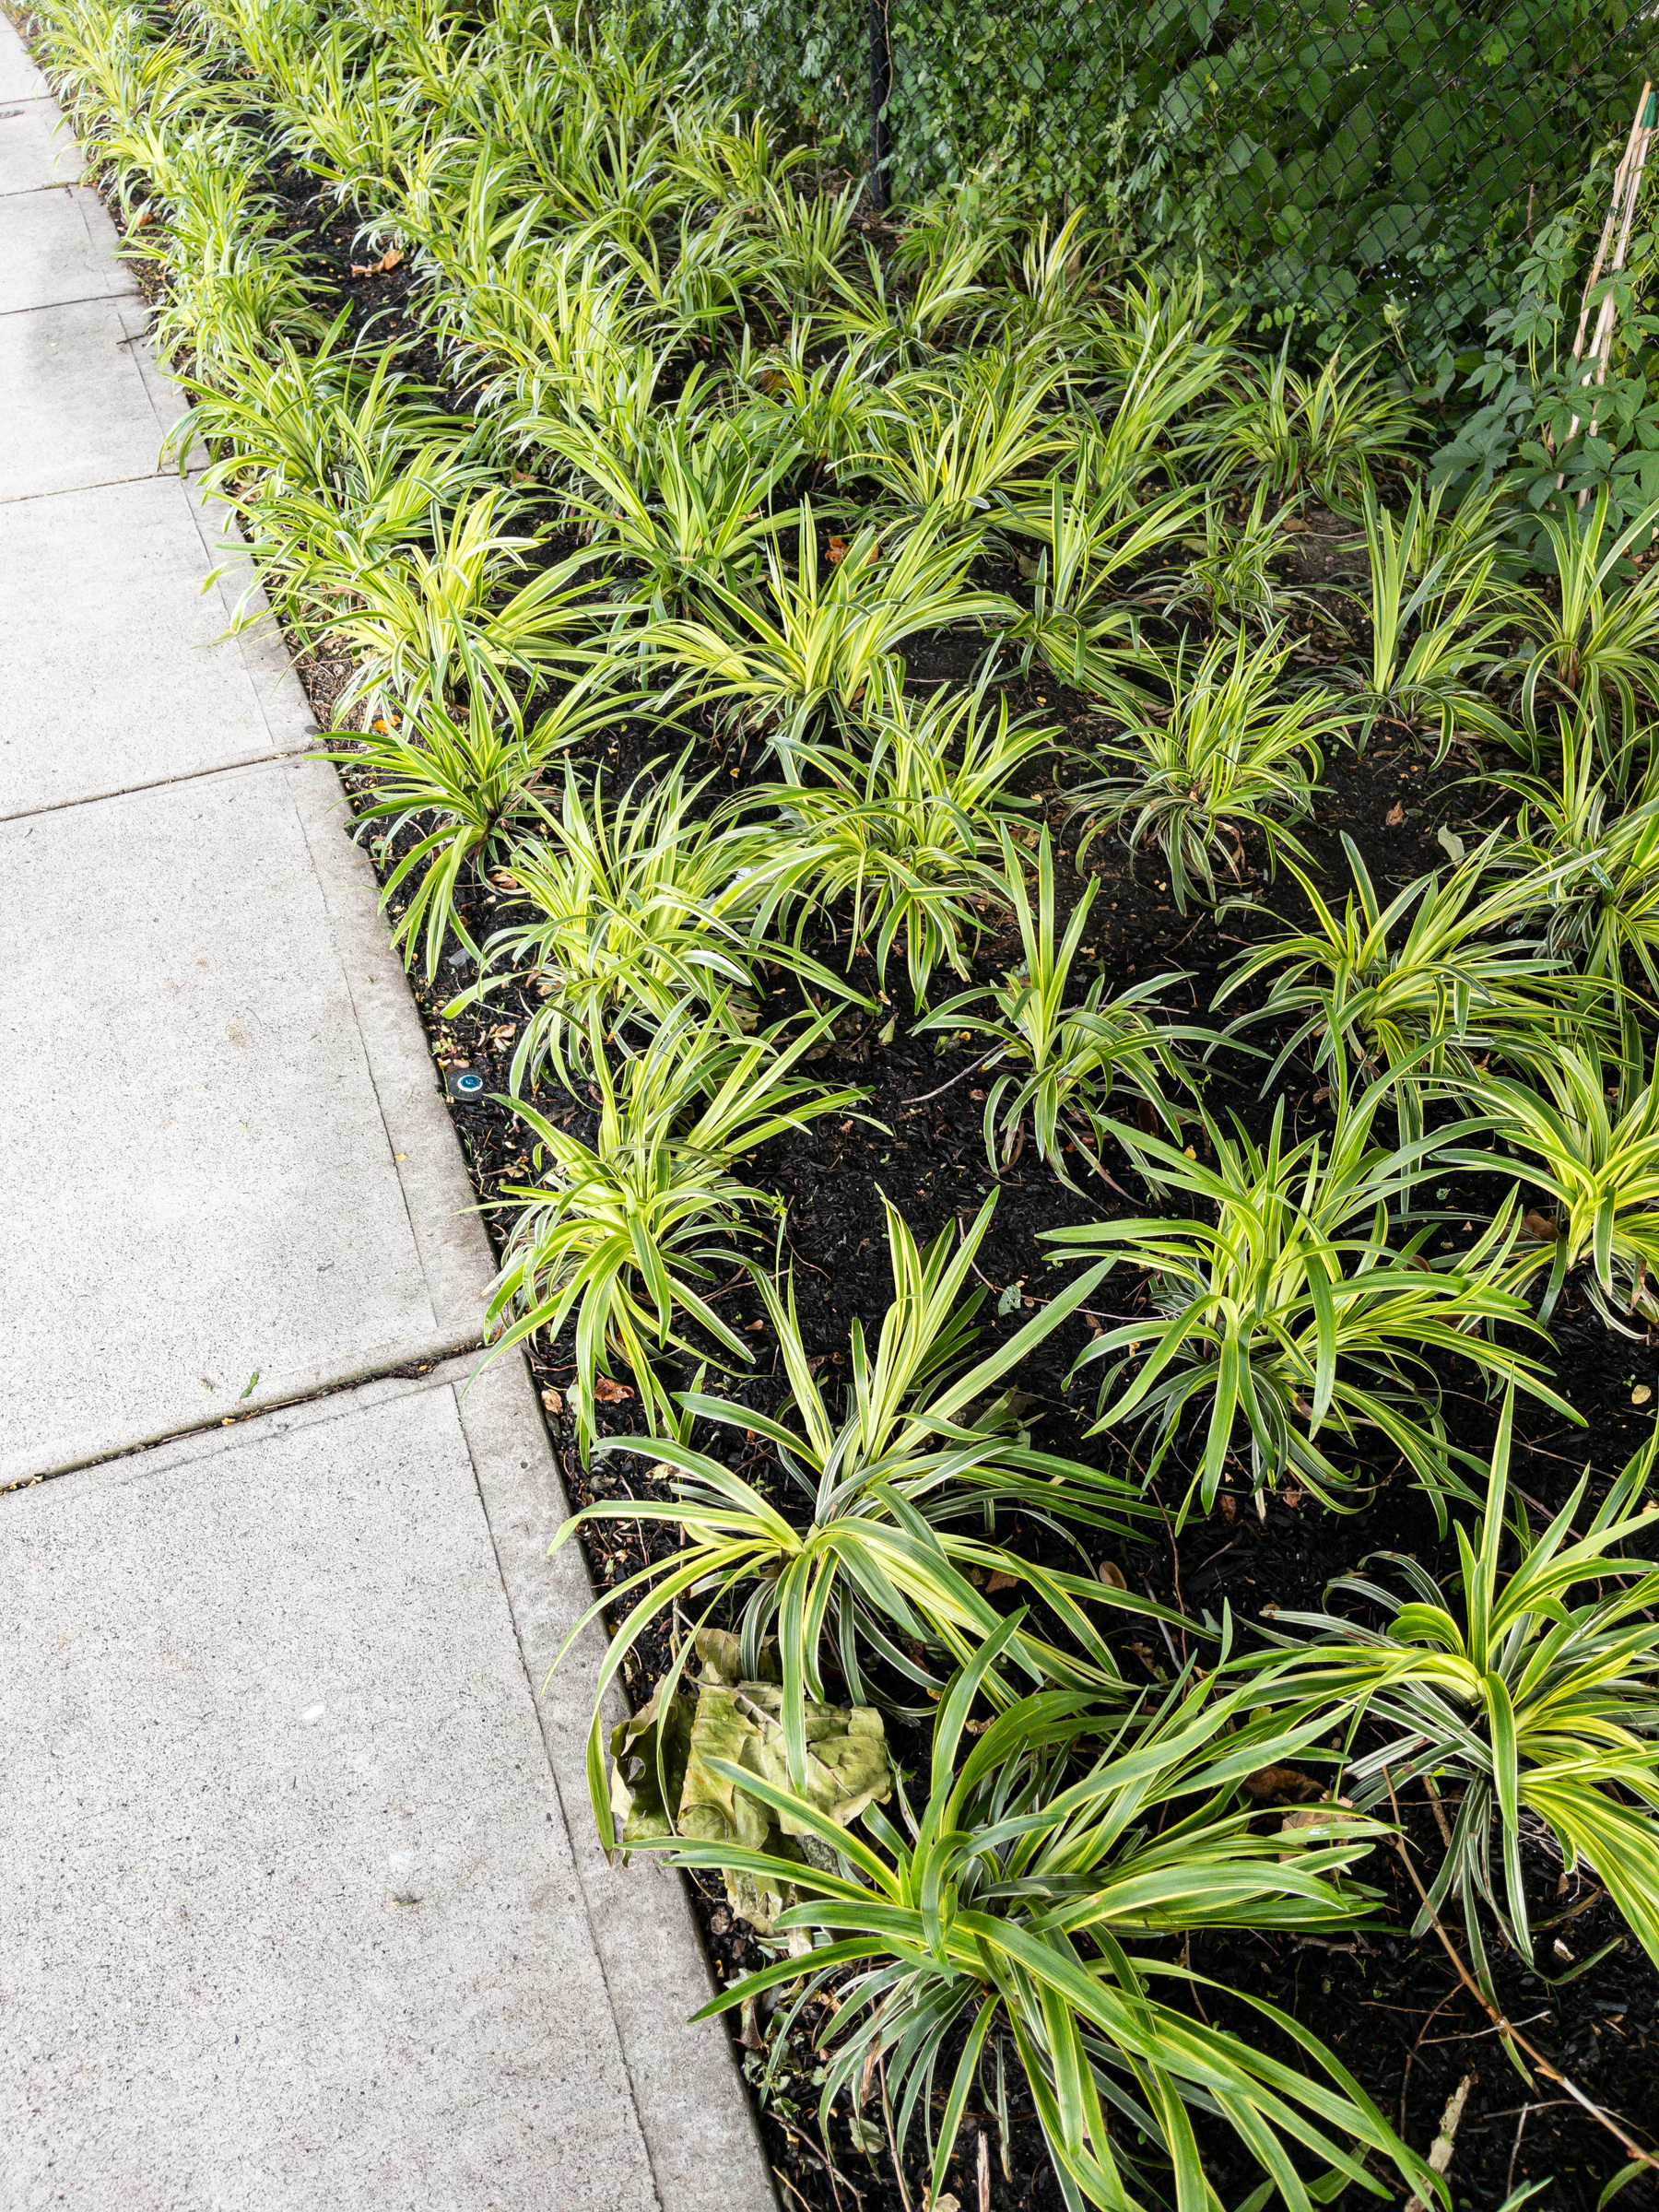 New plantings by a sidewalk.